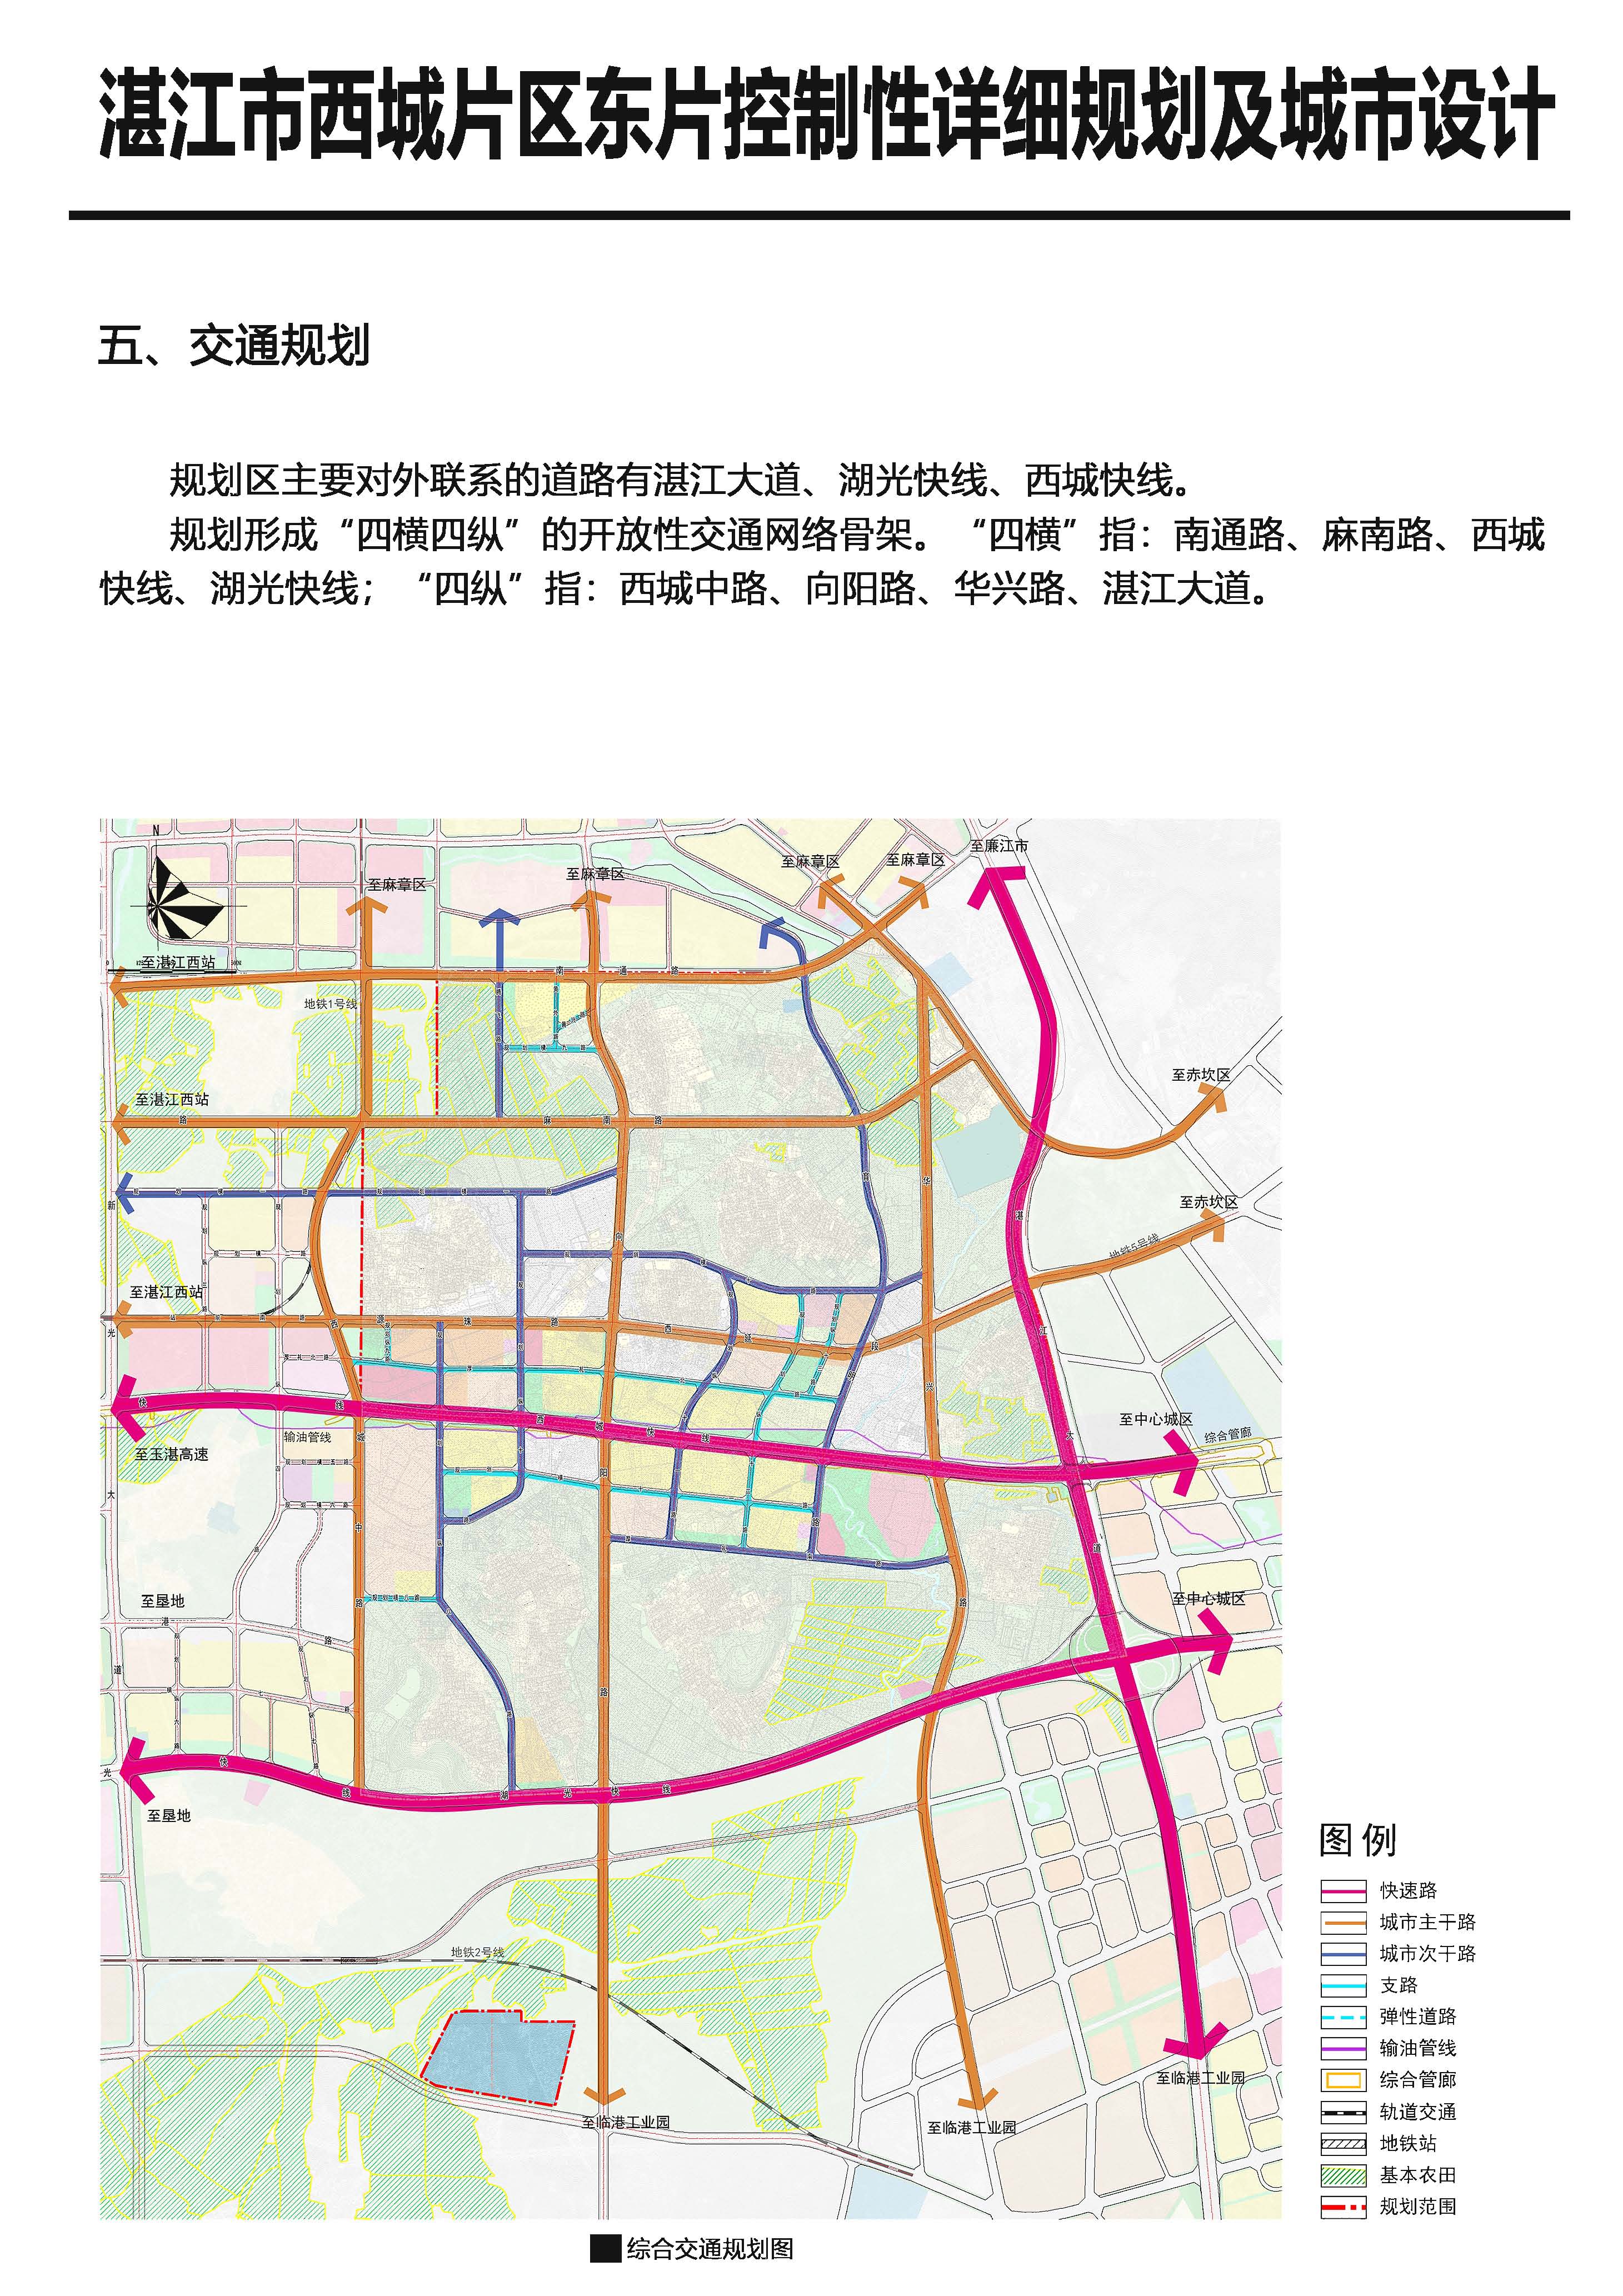 《湛江西城东片区控制性详细规划及城市设计》批后公告_页面_6.jpg